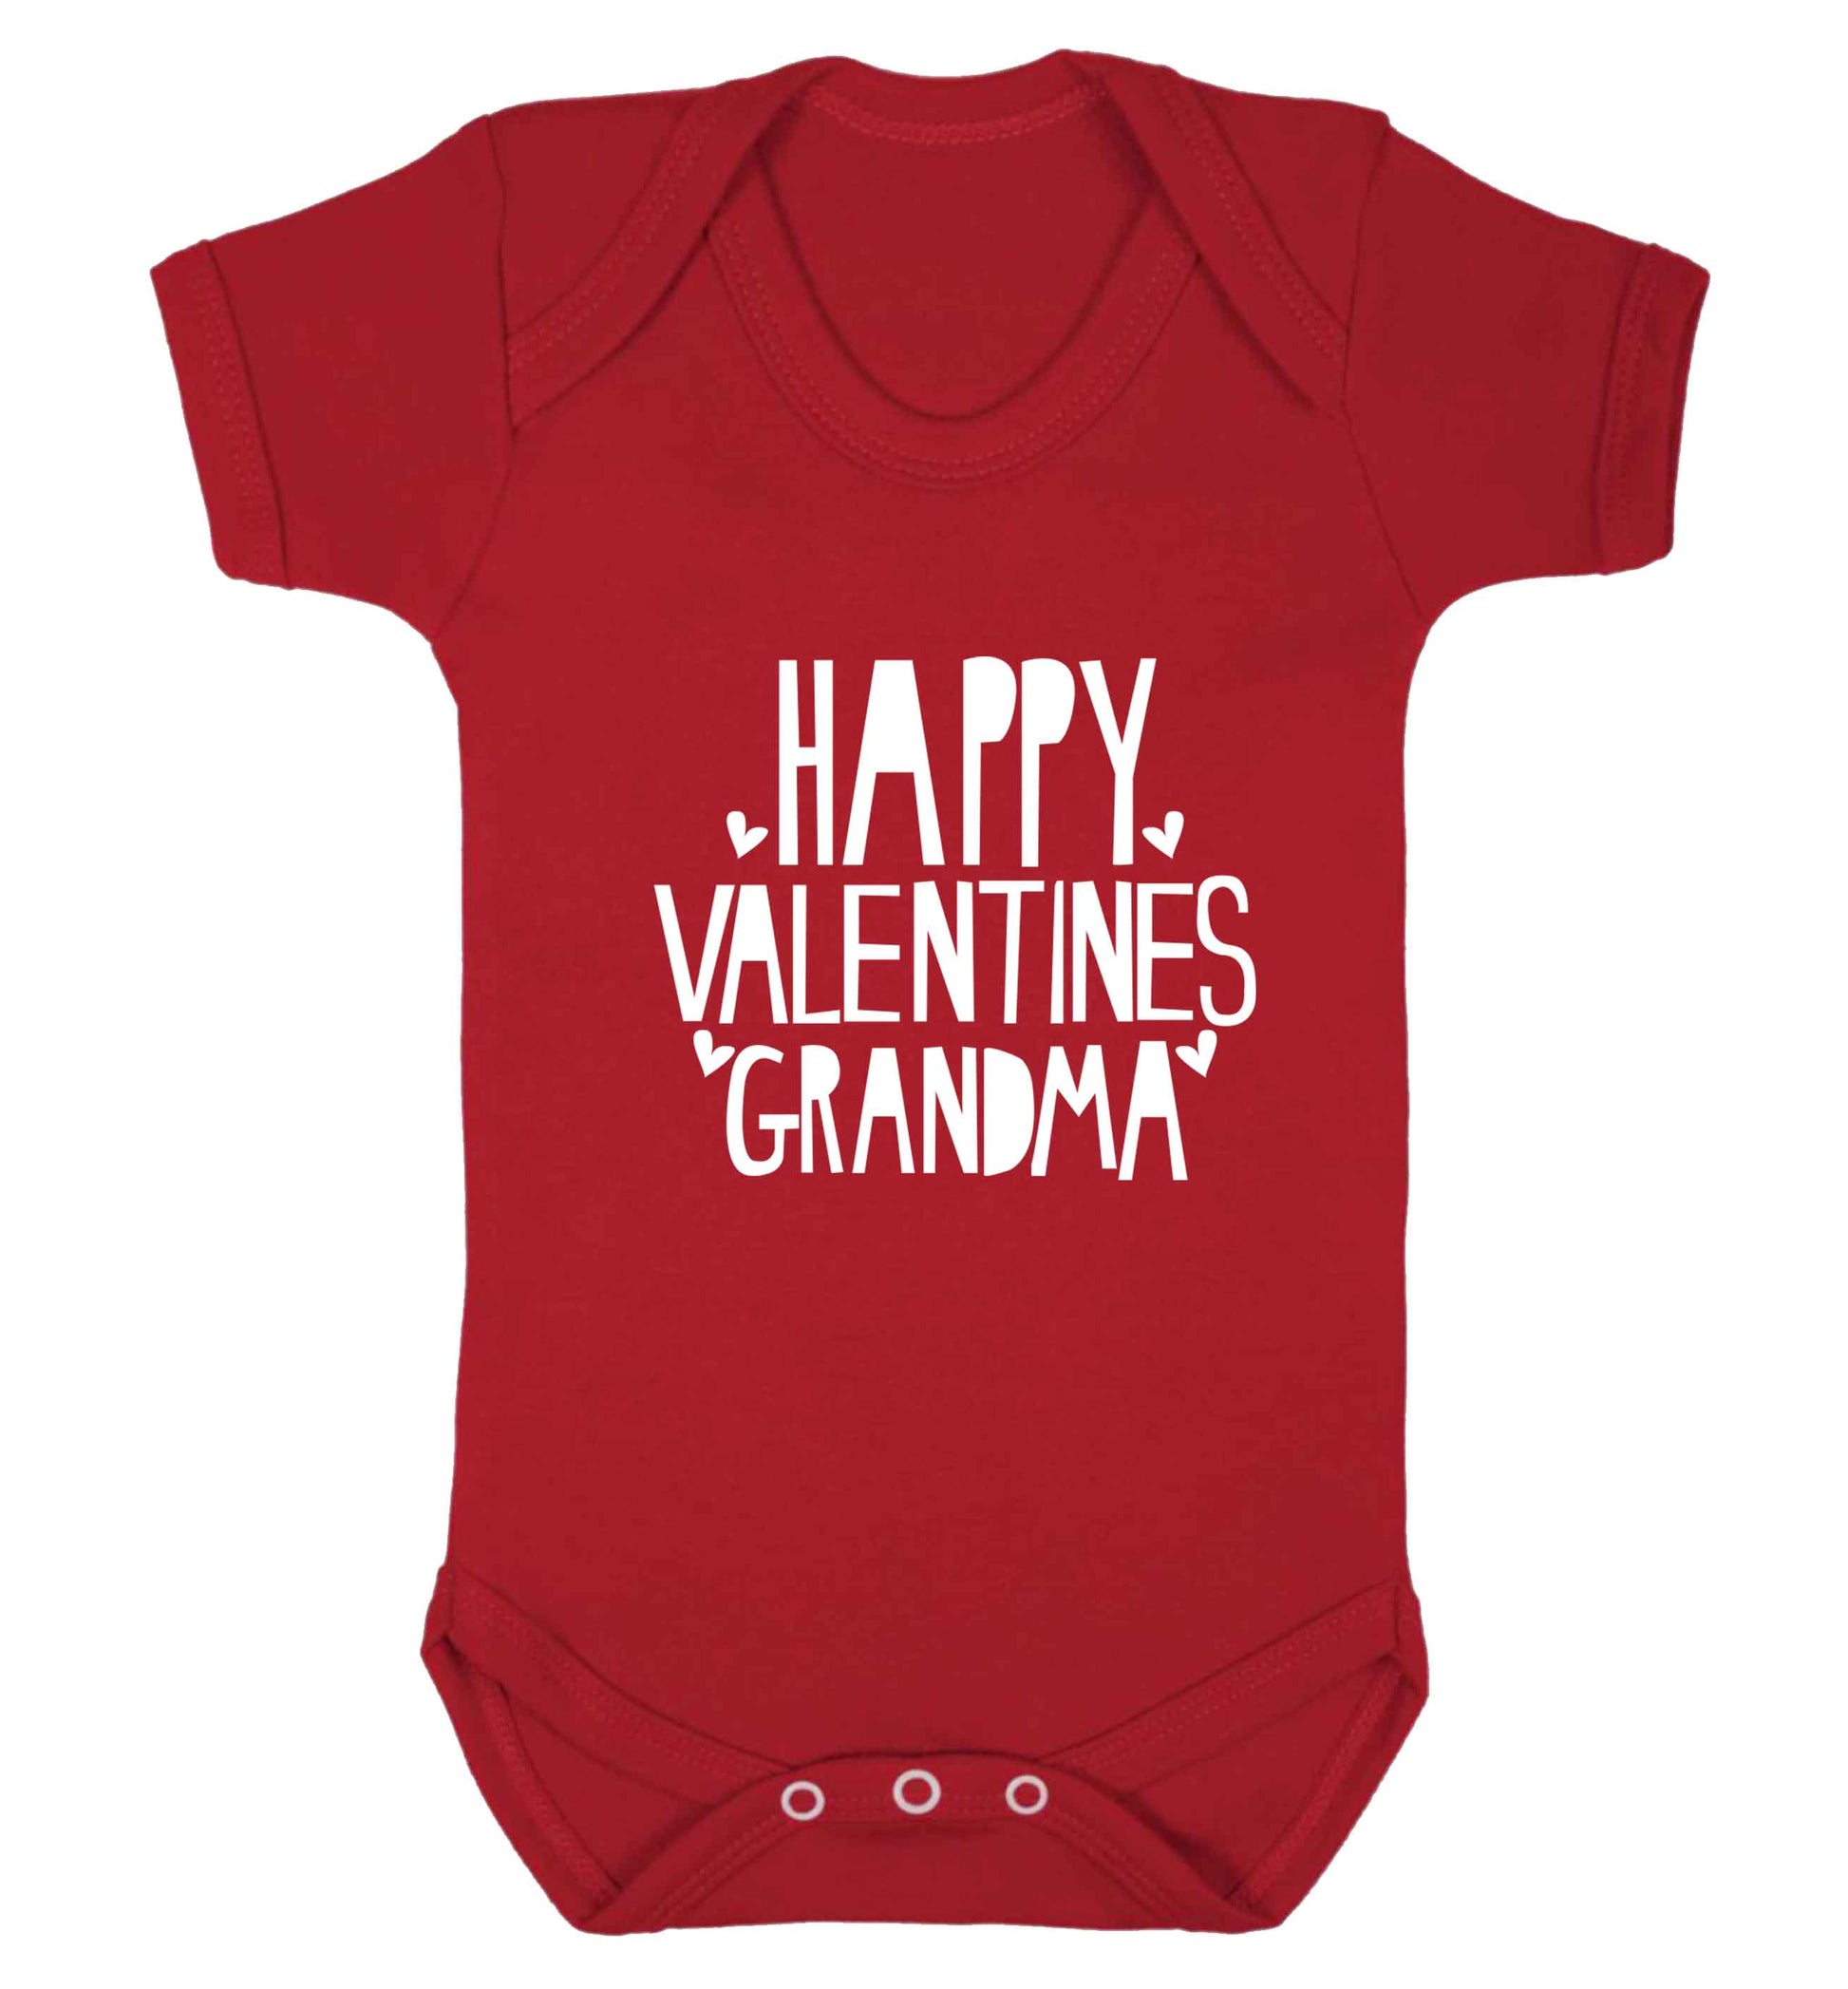 Happy valentines grandma baby vest red 18-24 months